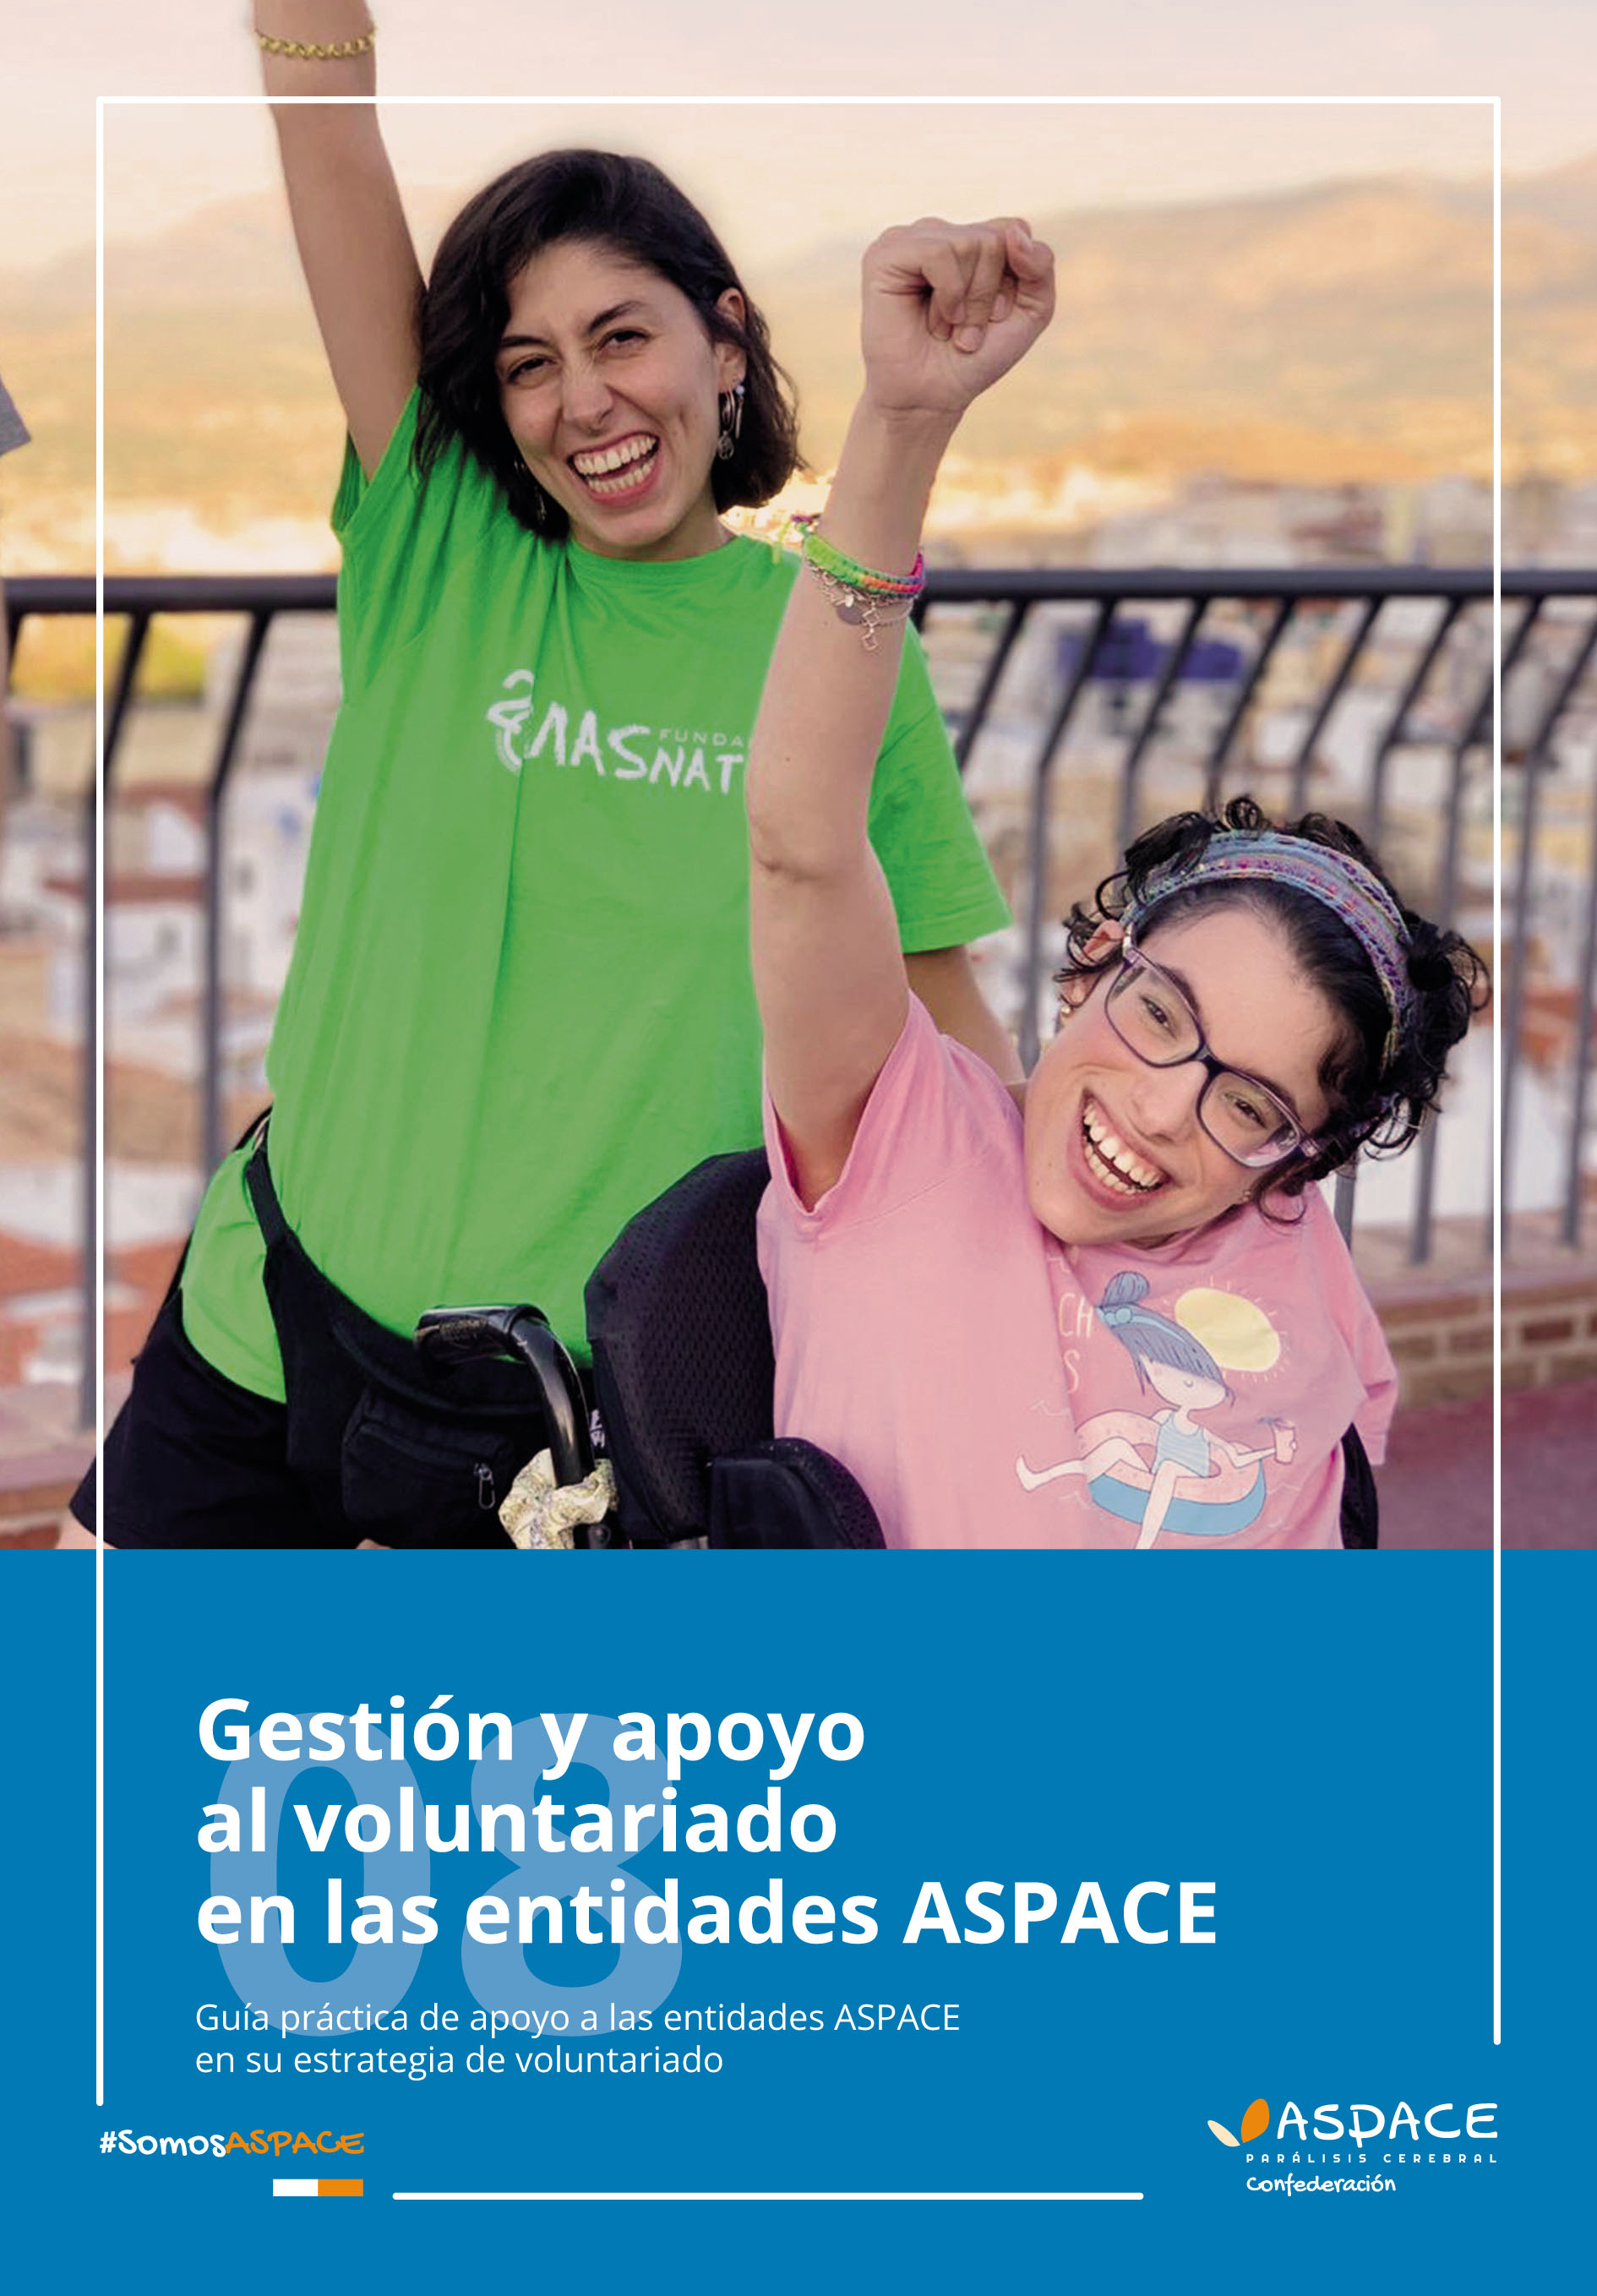 Nueva guía ASPACE de apoyo a las entidades en su estrategia de voluntariado